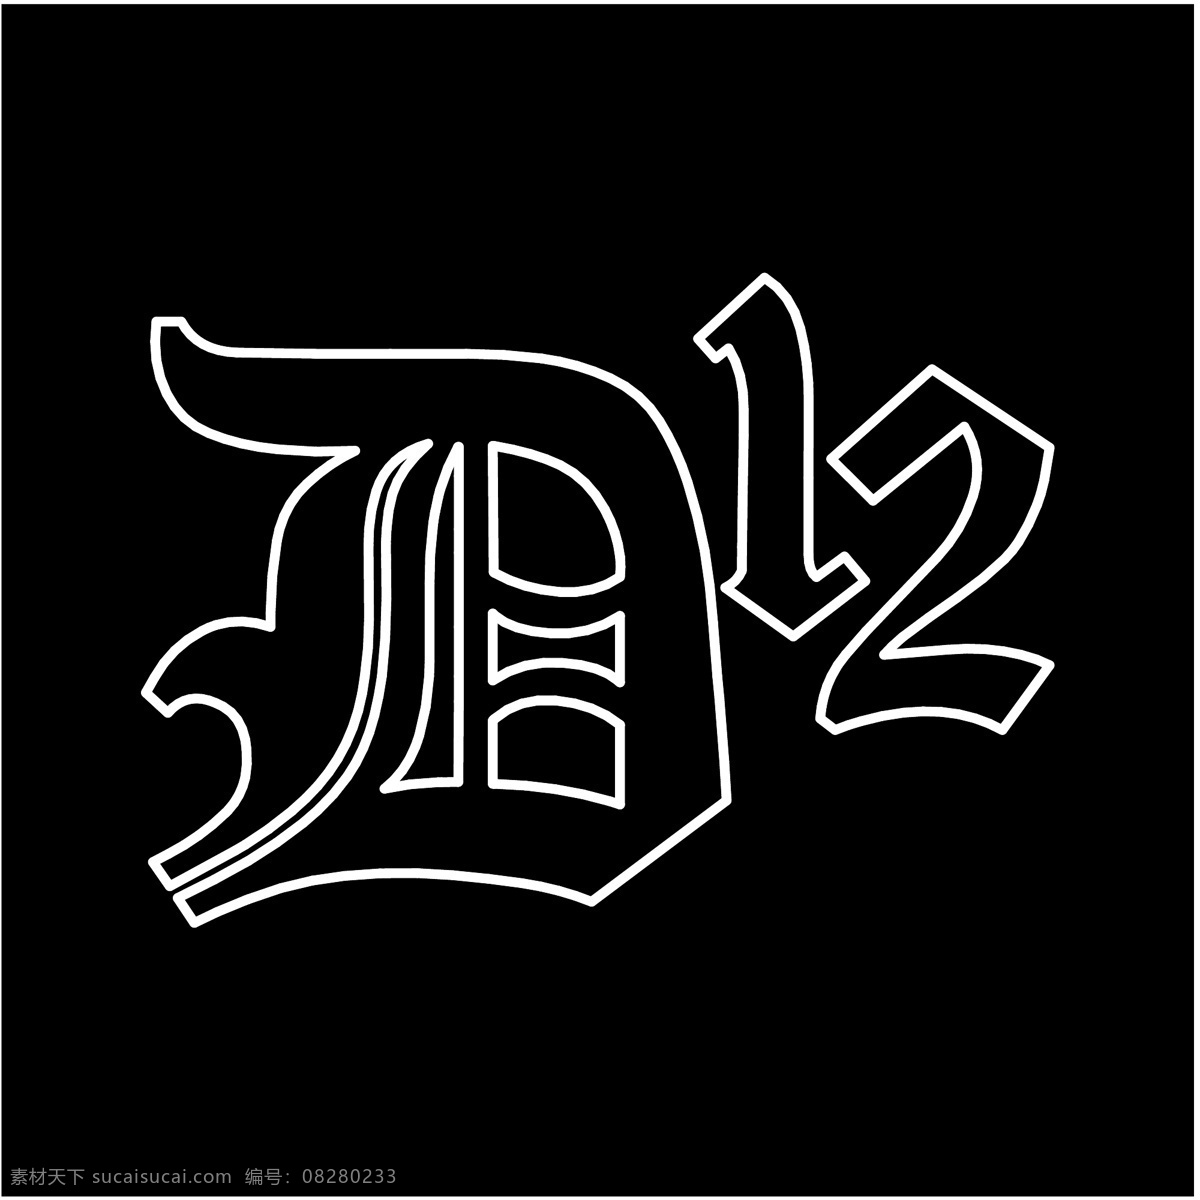 d12 d12标志 标识为免费 黑色